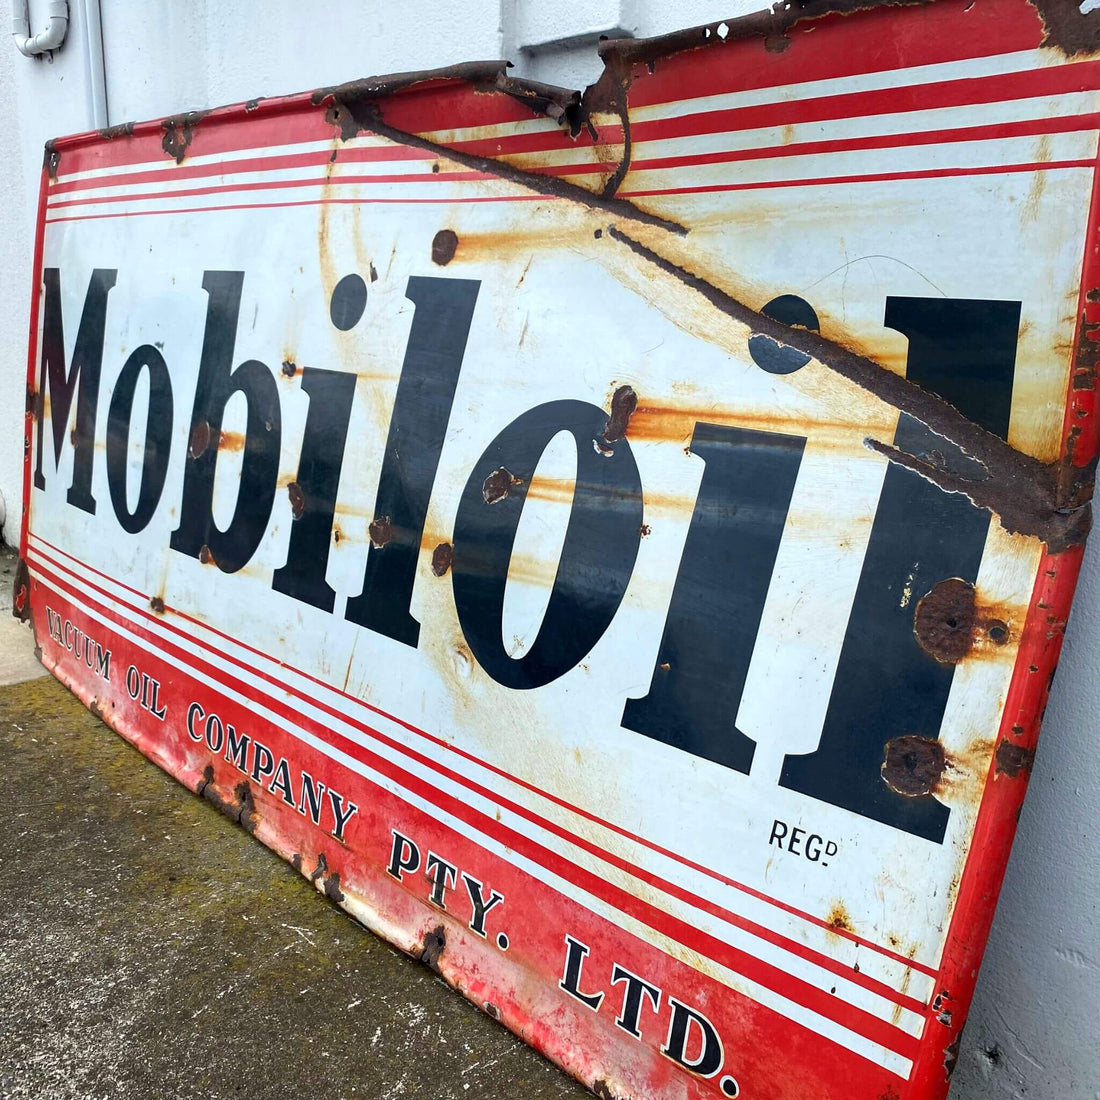 Mobil Oil Enamel Sign